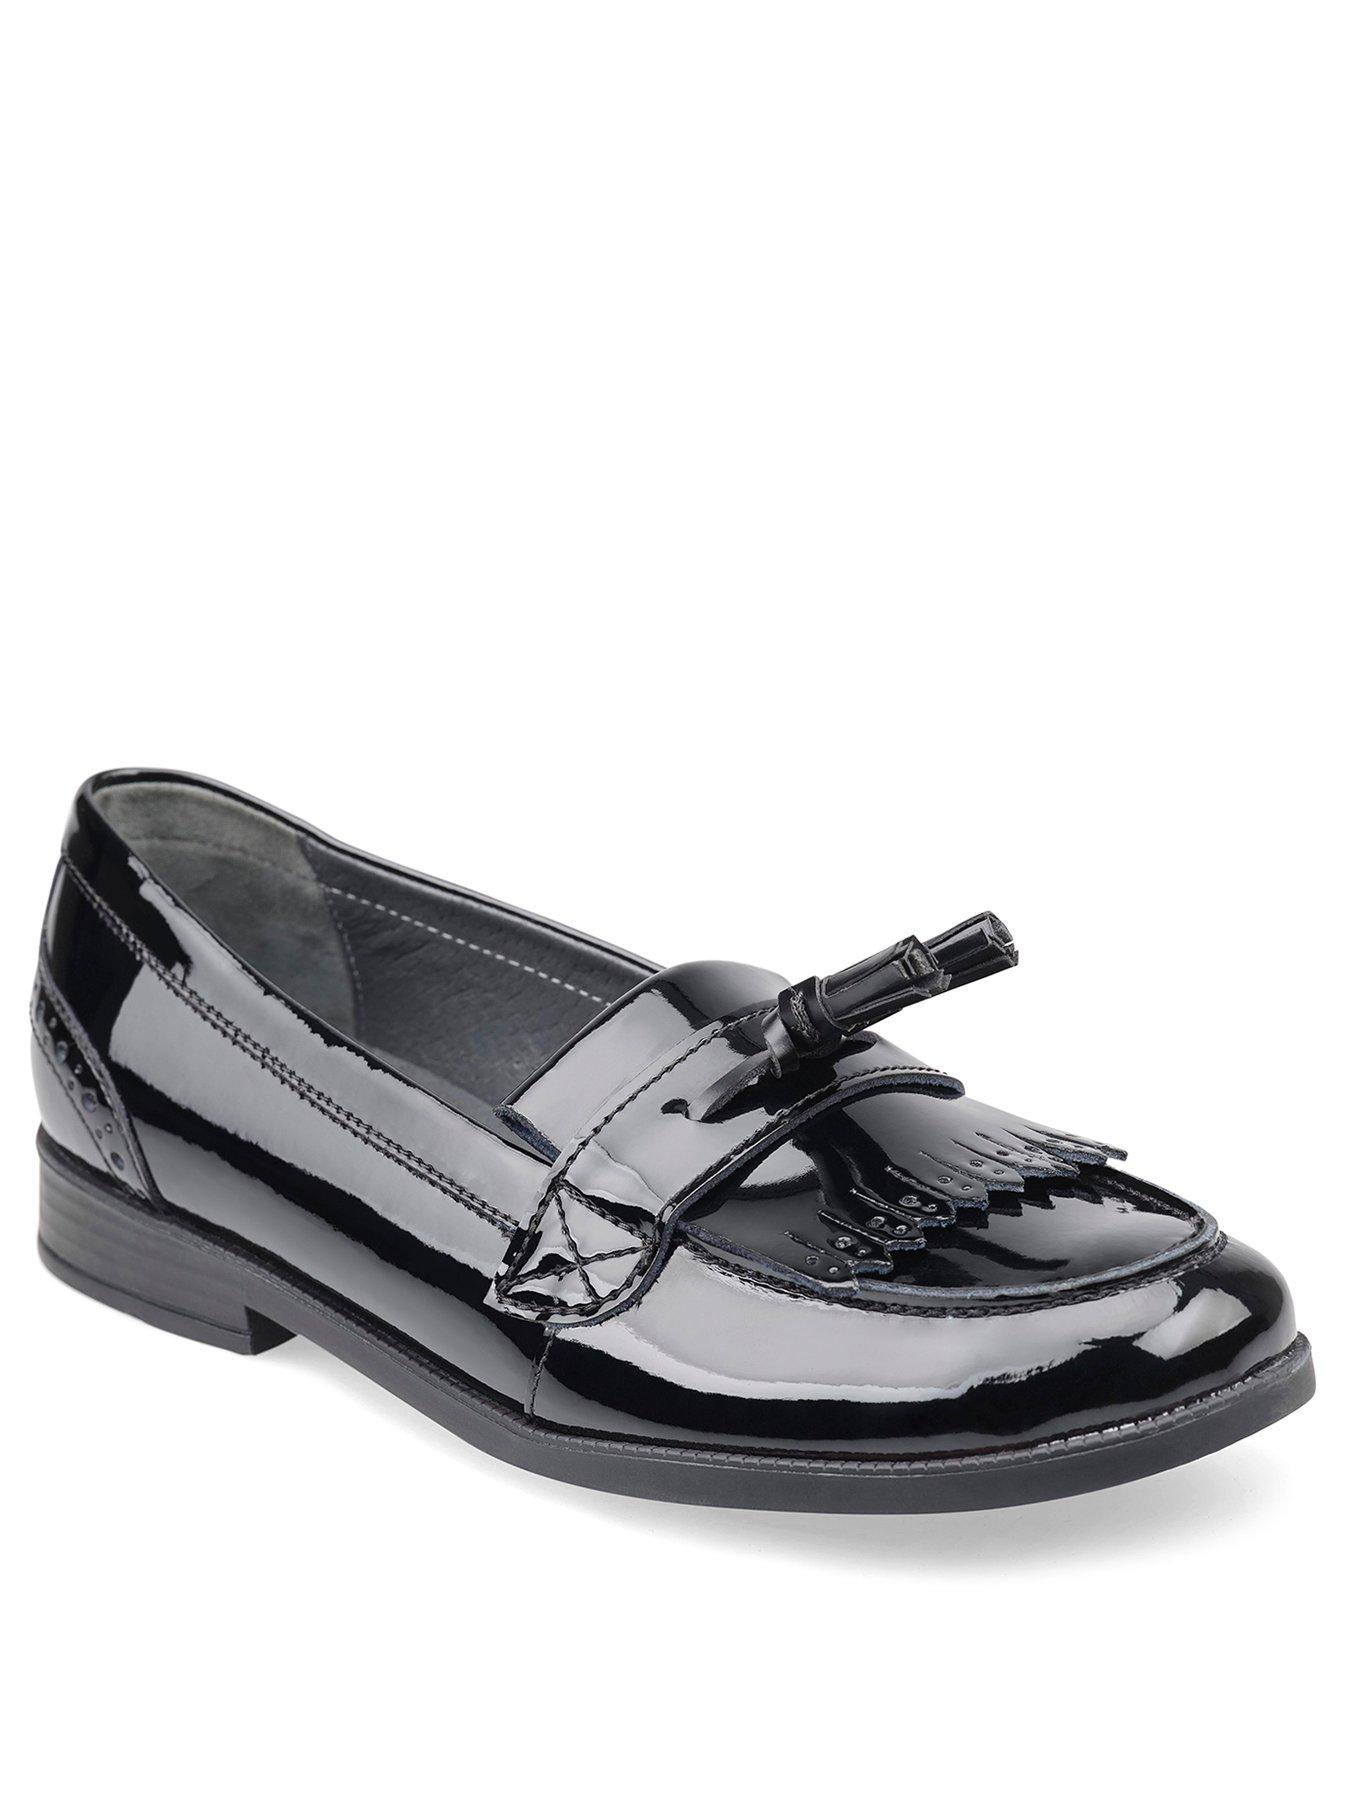 School & uniform Sketch Older Girls Loafer Shool Shoes - Black Patent